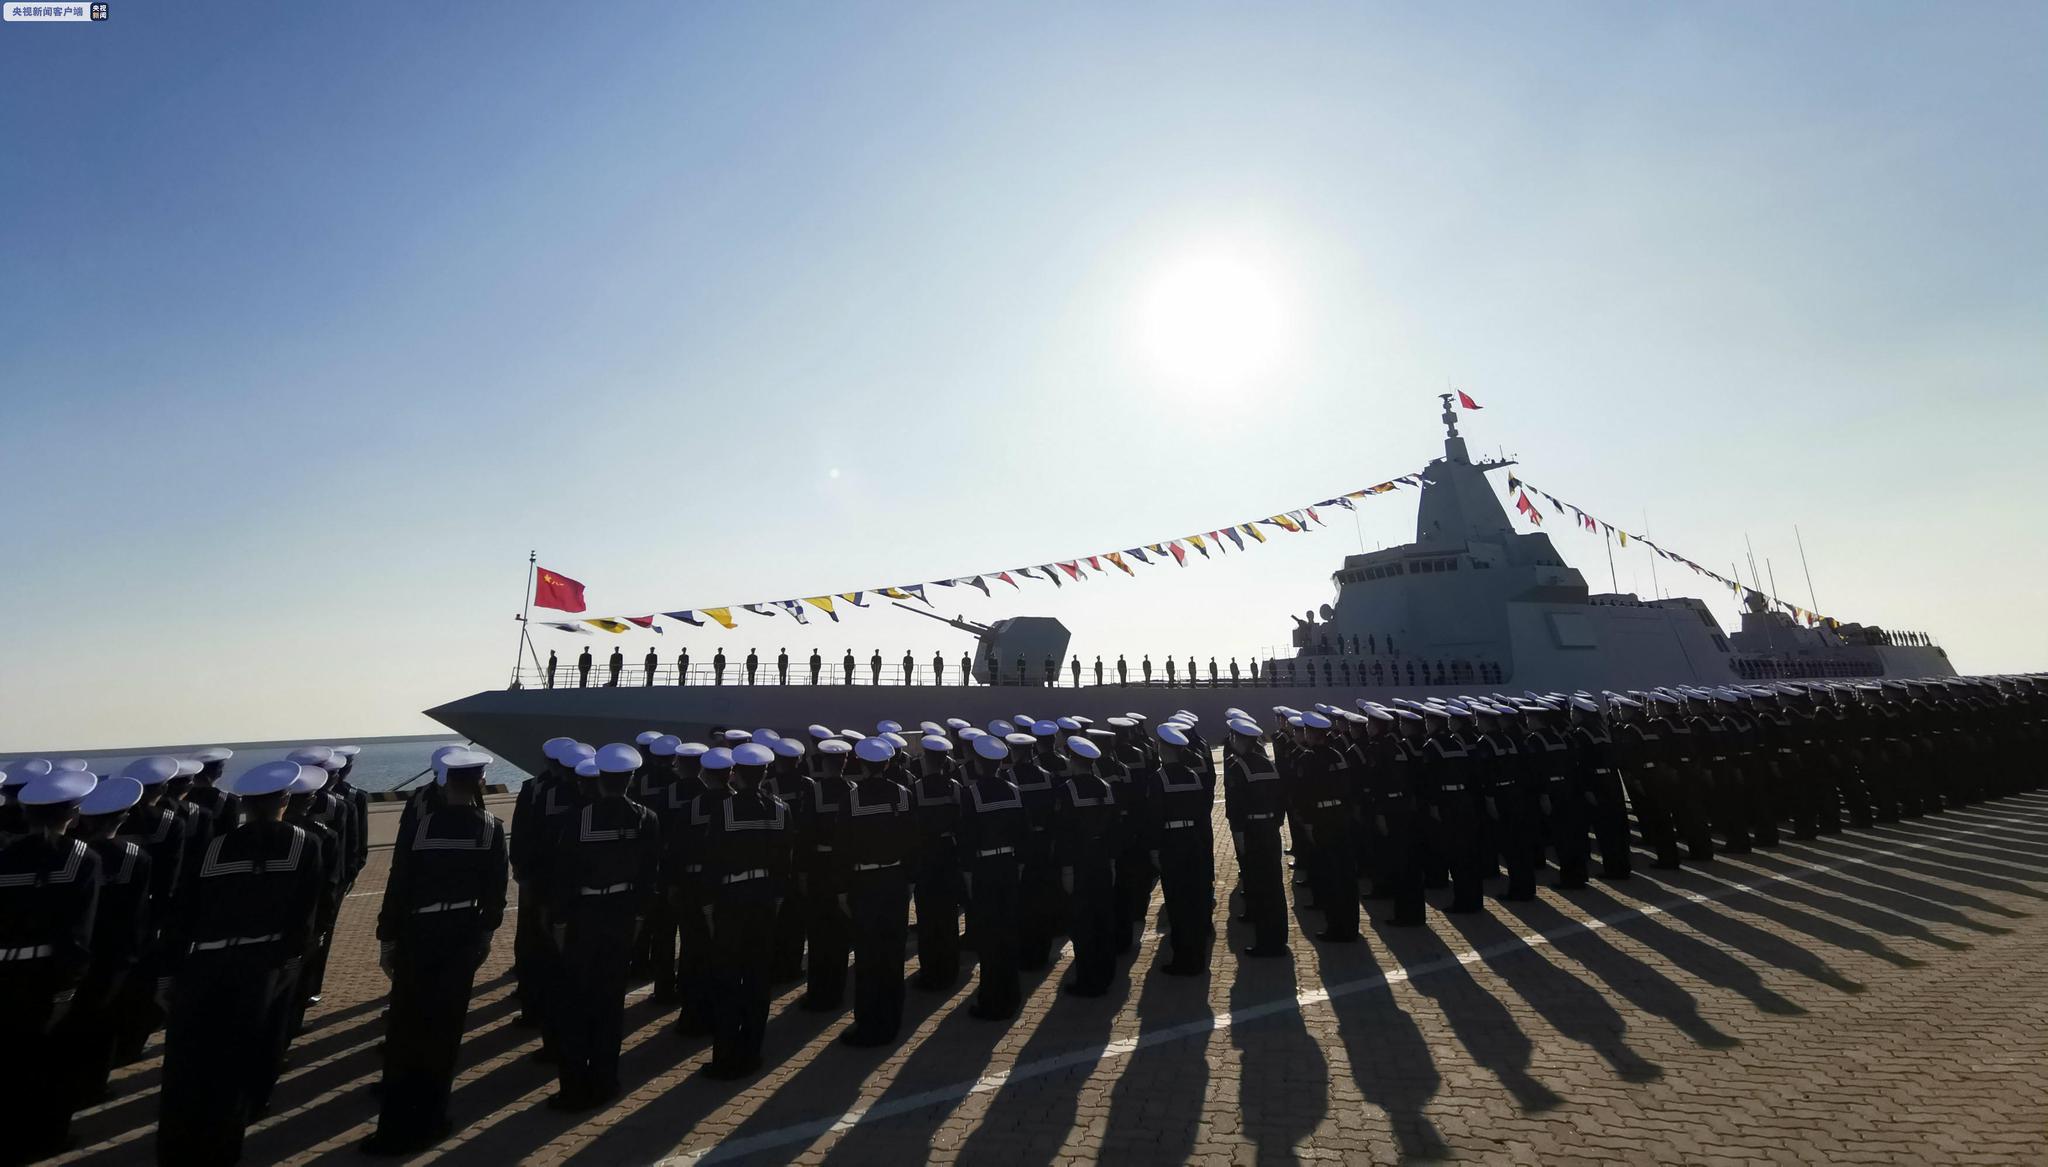 我国70周年海军节令人瞩目, 50艘军舰纷纷亮相, 场面空前浩大!_中国海军